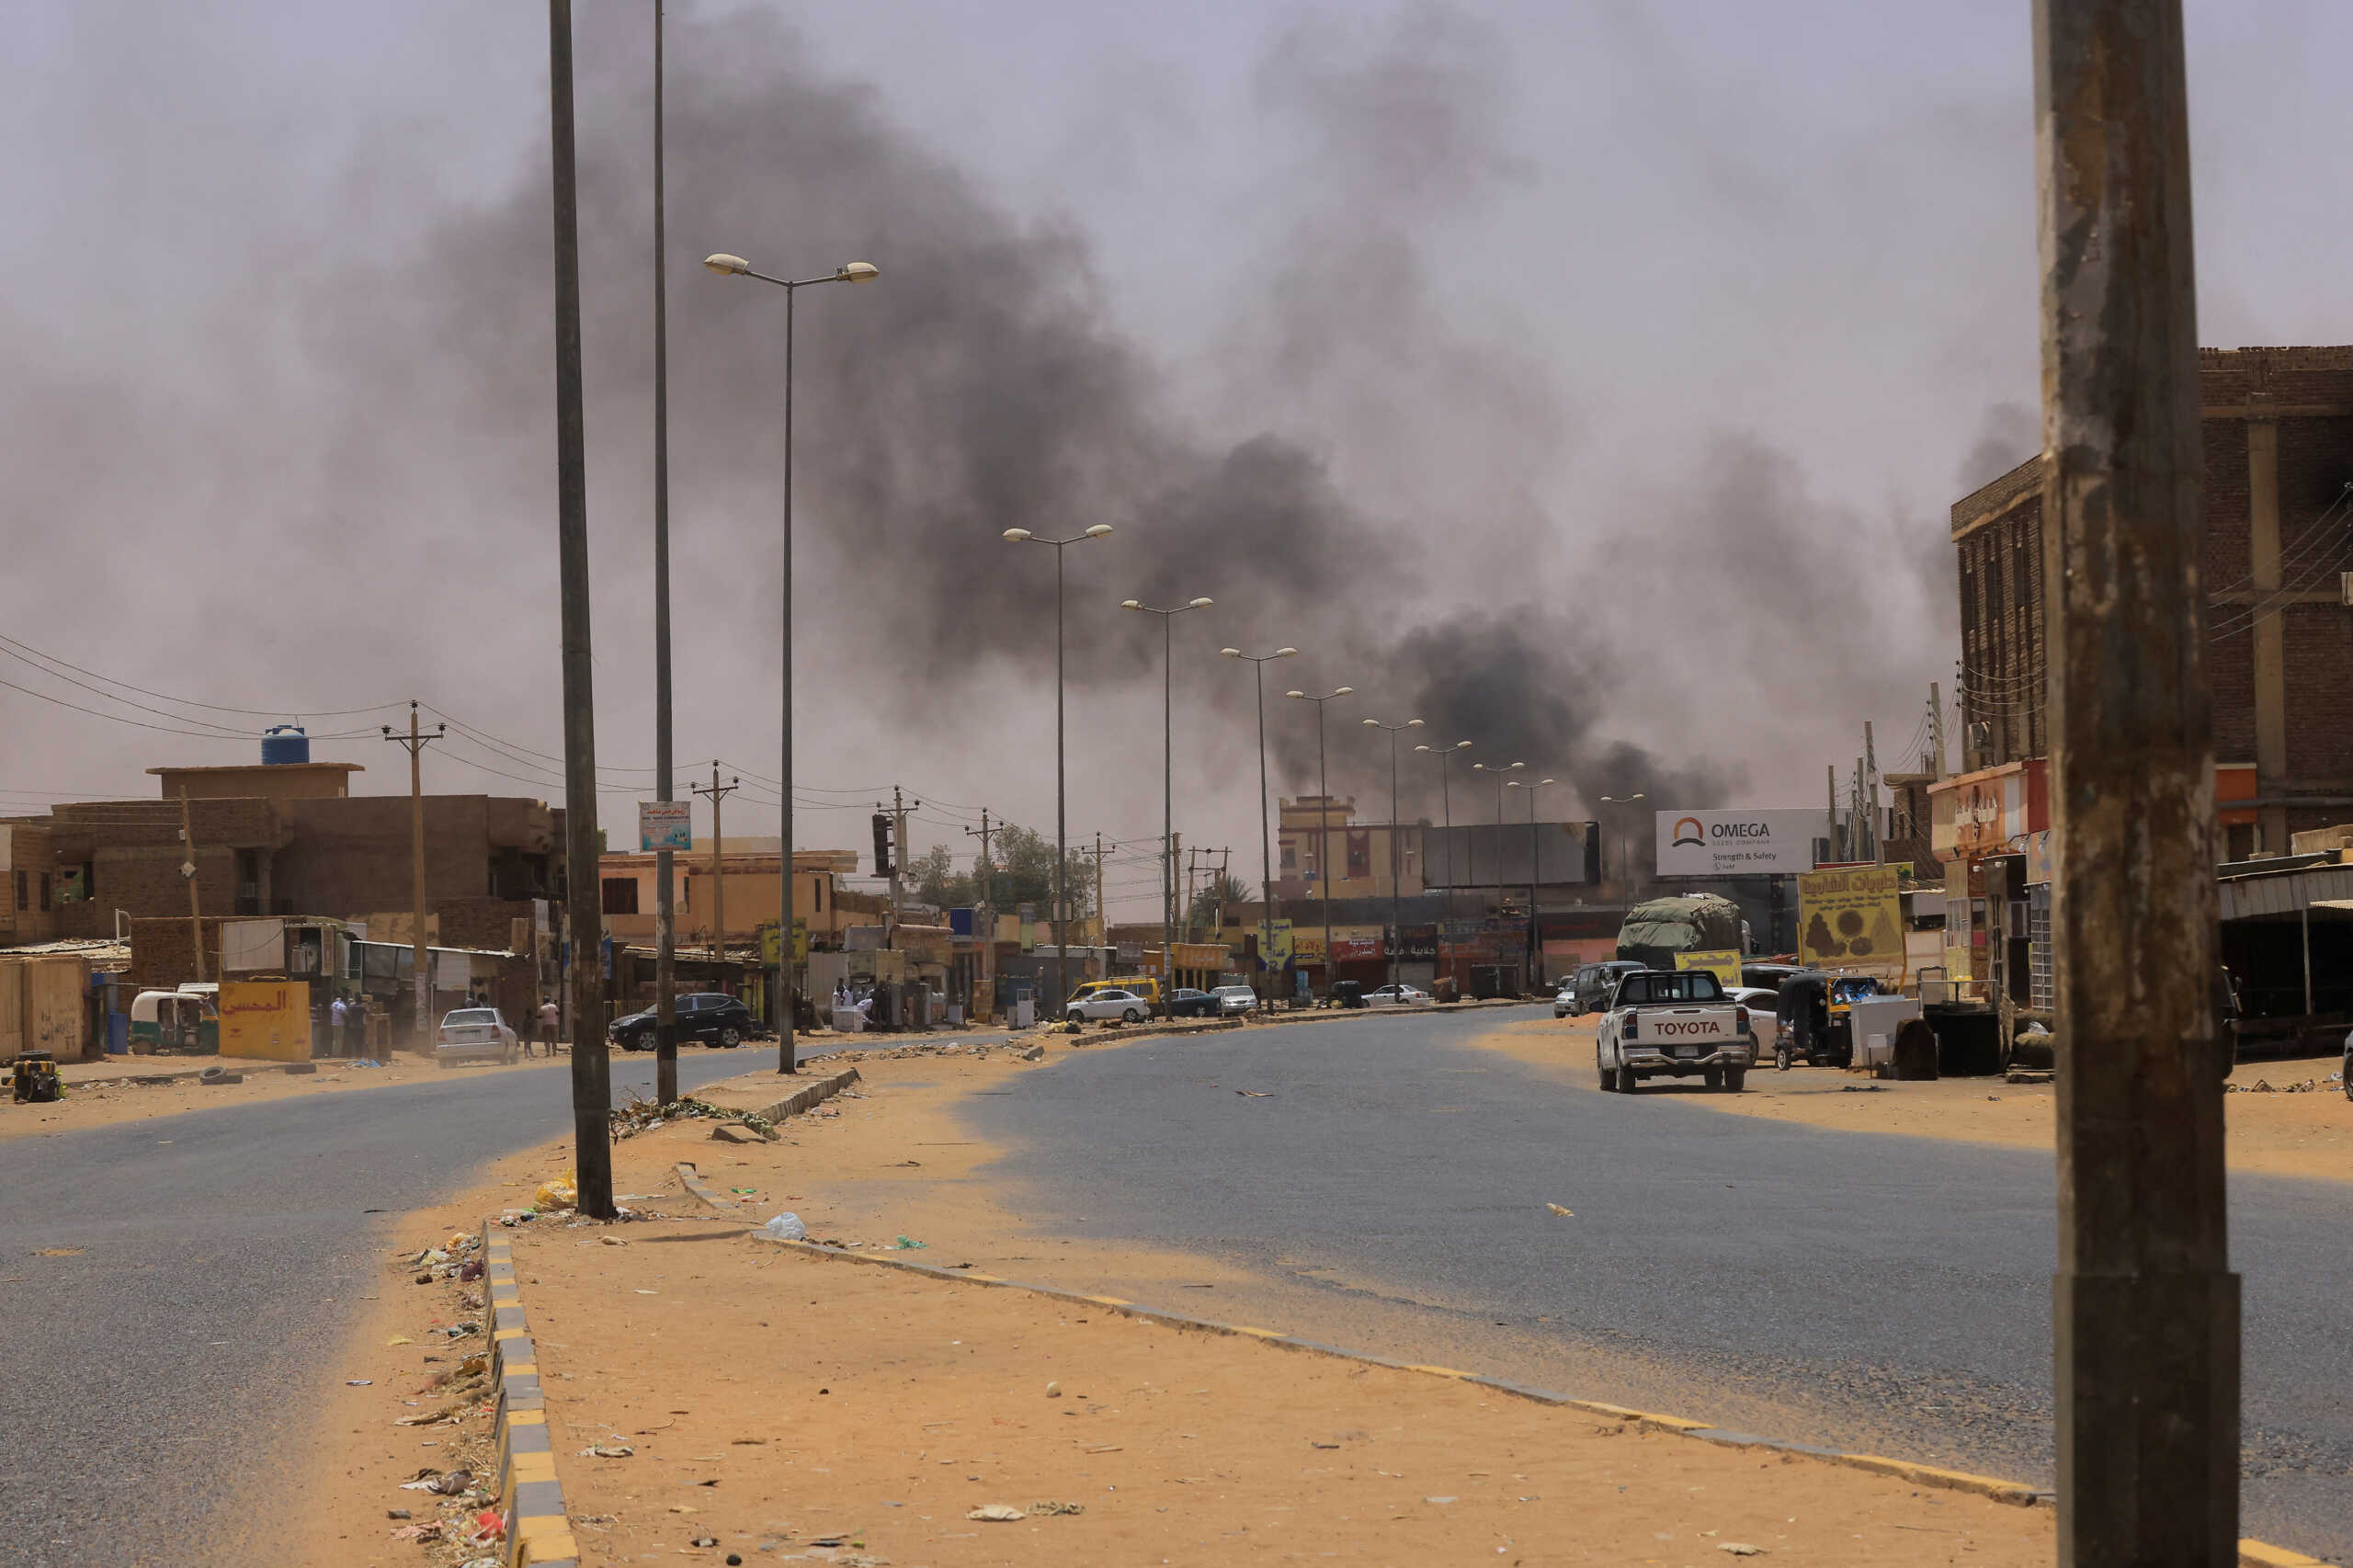 Σουδάν: Ανοίγει ανθρωπιστικός διάδρομος, αλλά μόνο για 3 ώρες κάθε μέρα